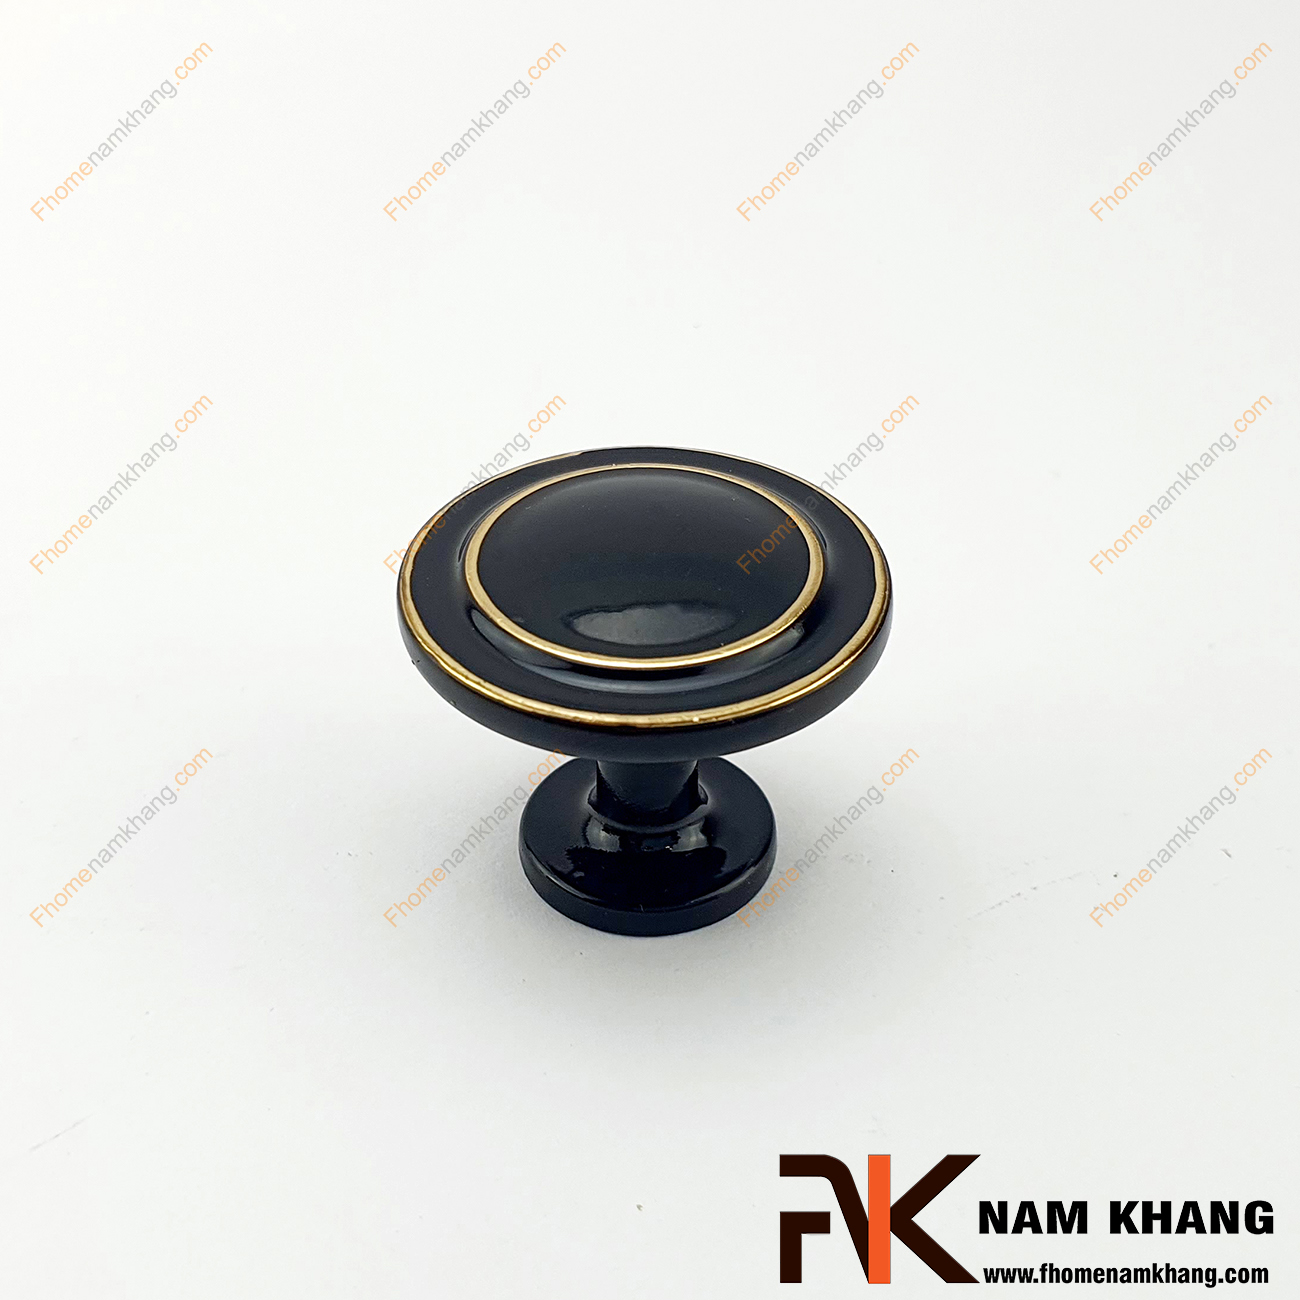 Núm cửa tủ dạng tròn màu đen bóng NK204-D có khuôn dạng dẹp bo tròn góc cạnh tinh tế được sử dụng nhiều trên nhiều phong cách tủ kệ khác nhau.